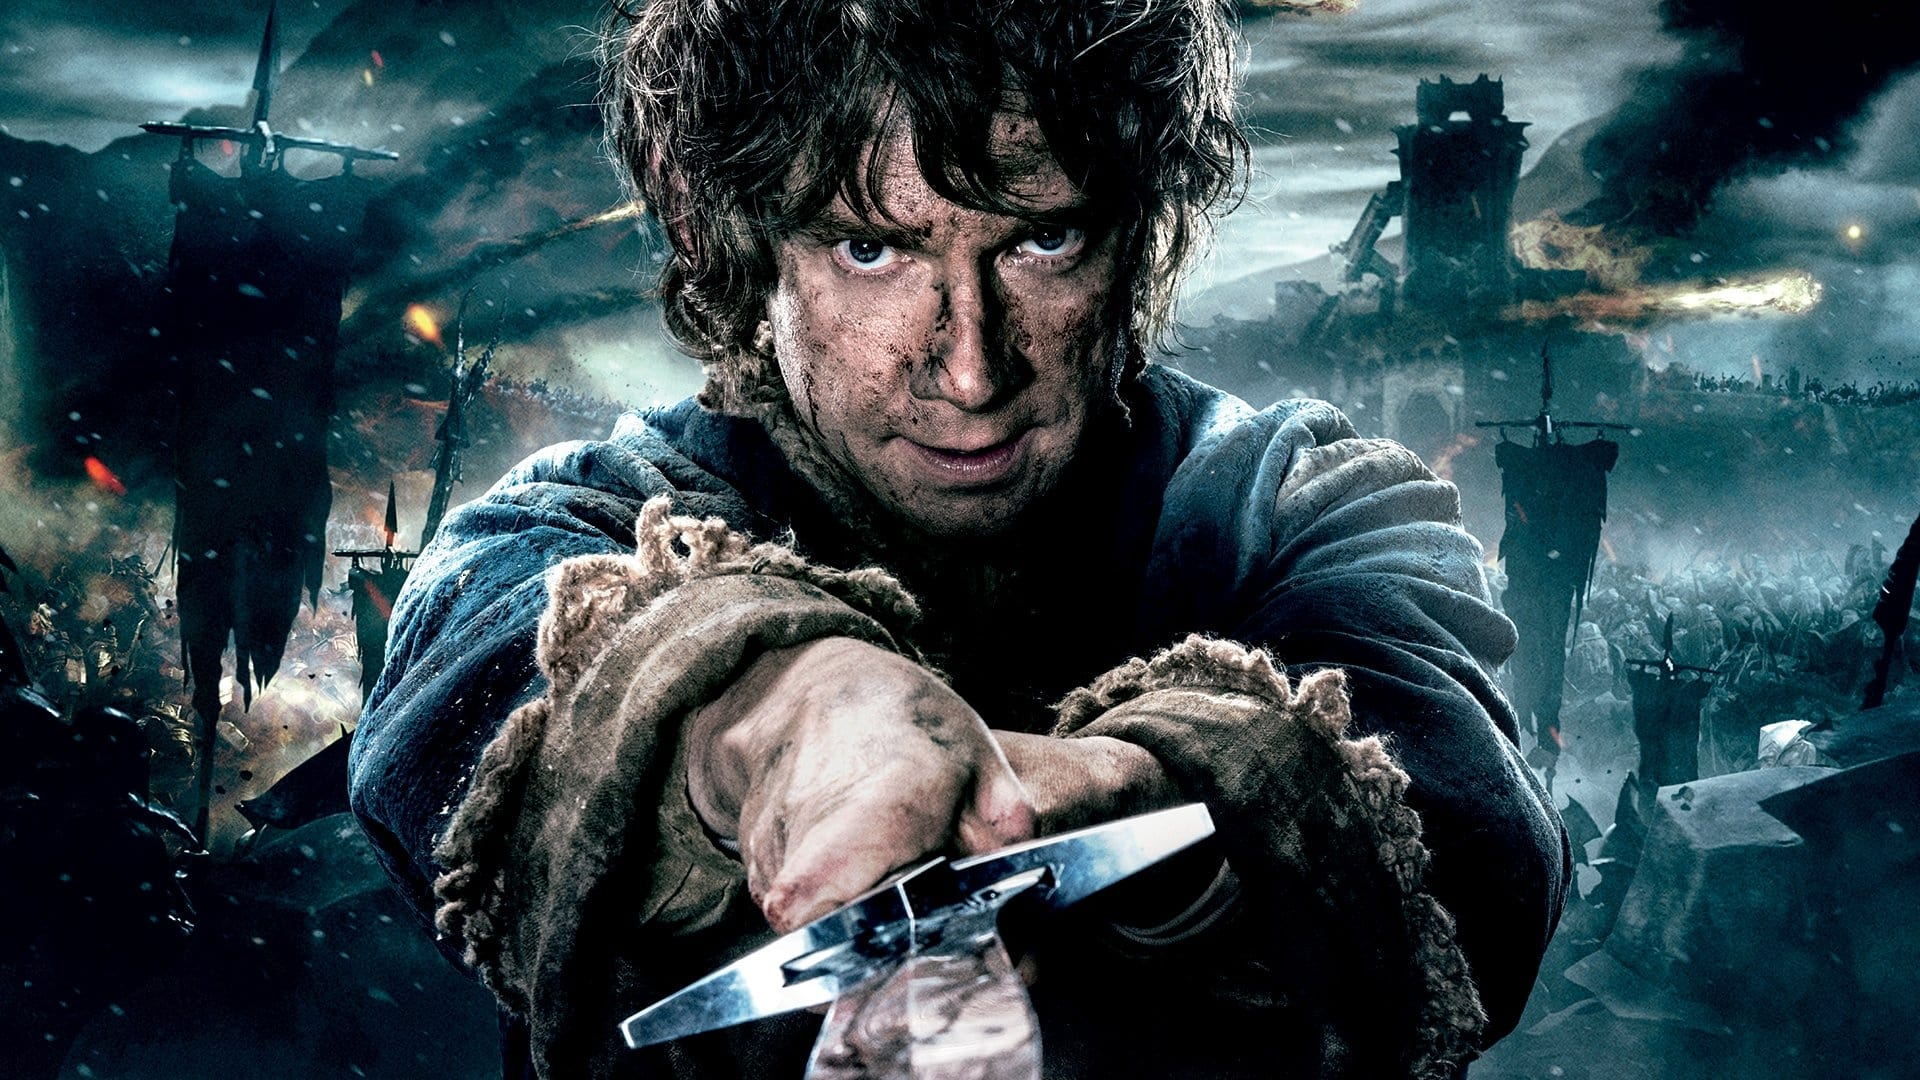 Image du film Le Hobbit : la bataille des cinq armées (version longue) x9q6jljsm3qosczfeqtxs5wxqkfjpg